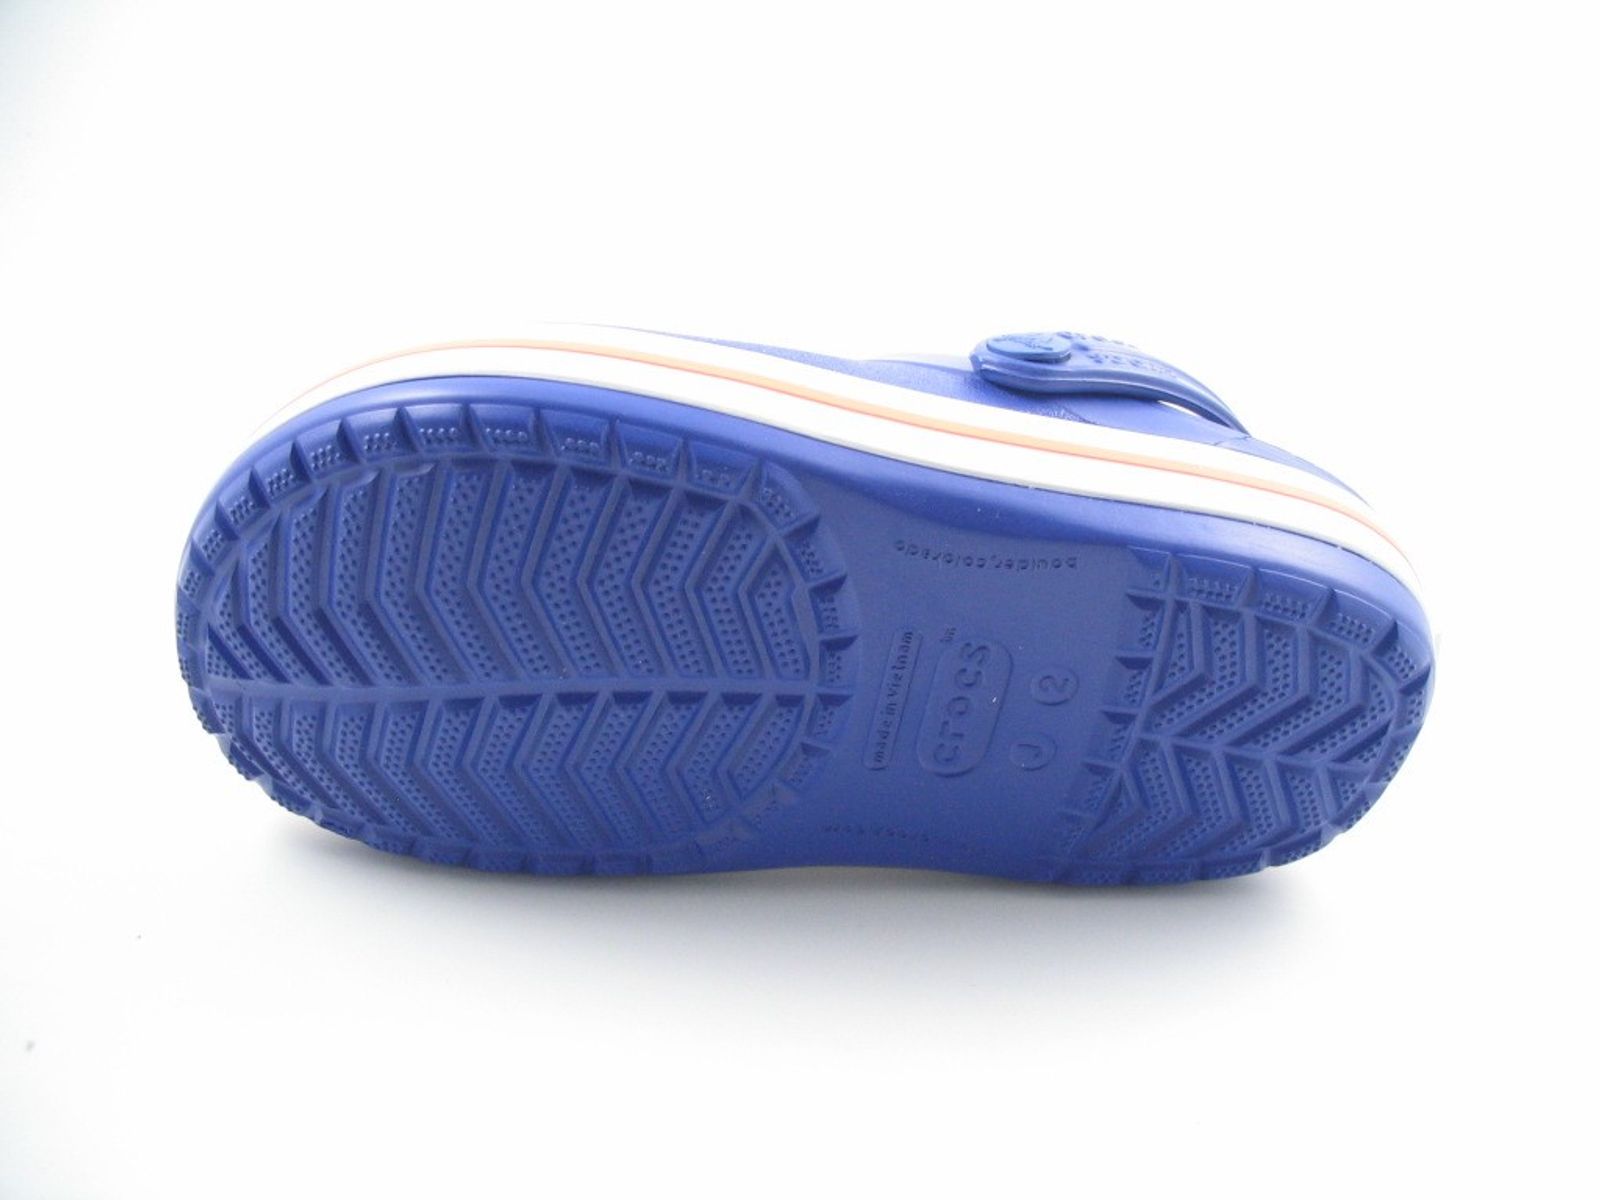 Schuh von Crocs, 1